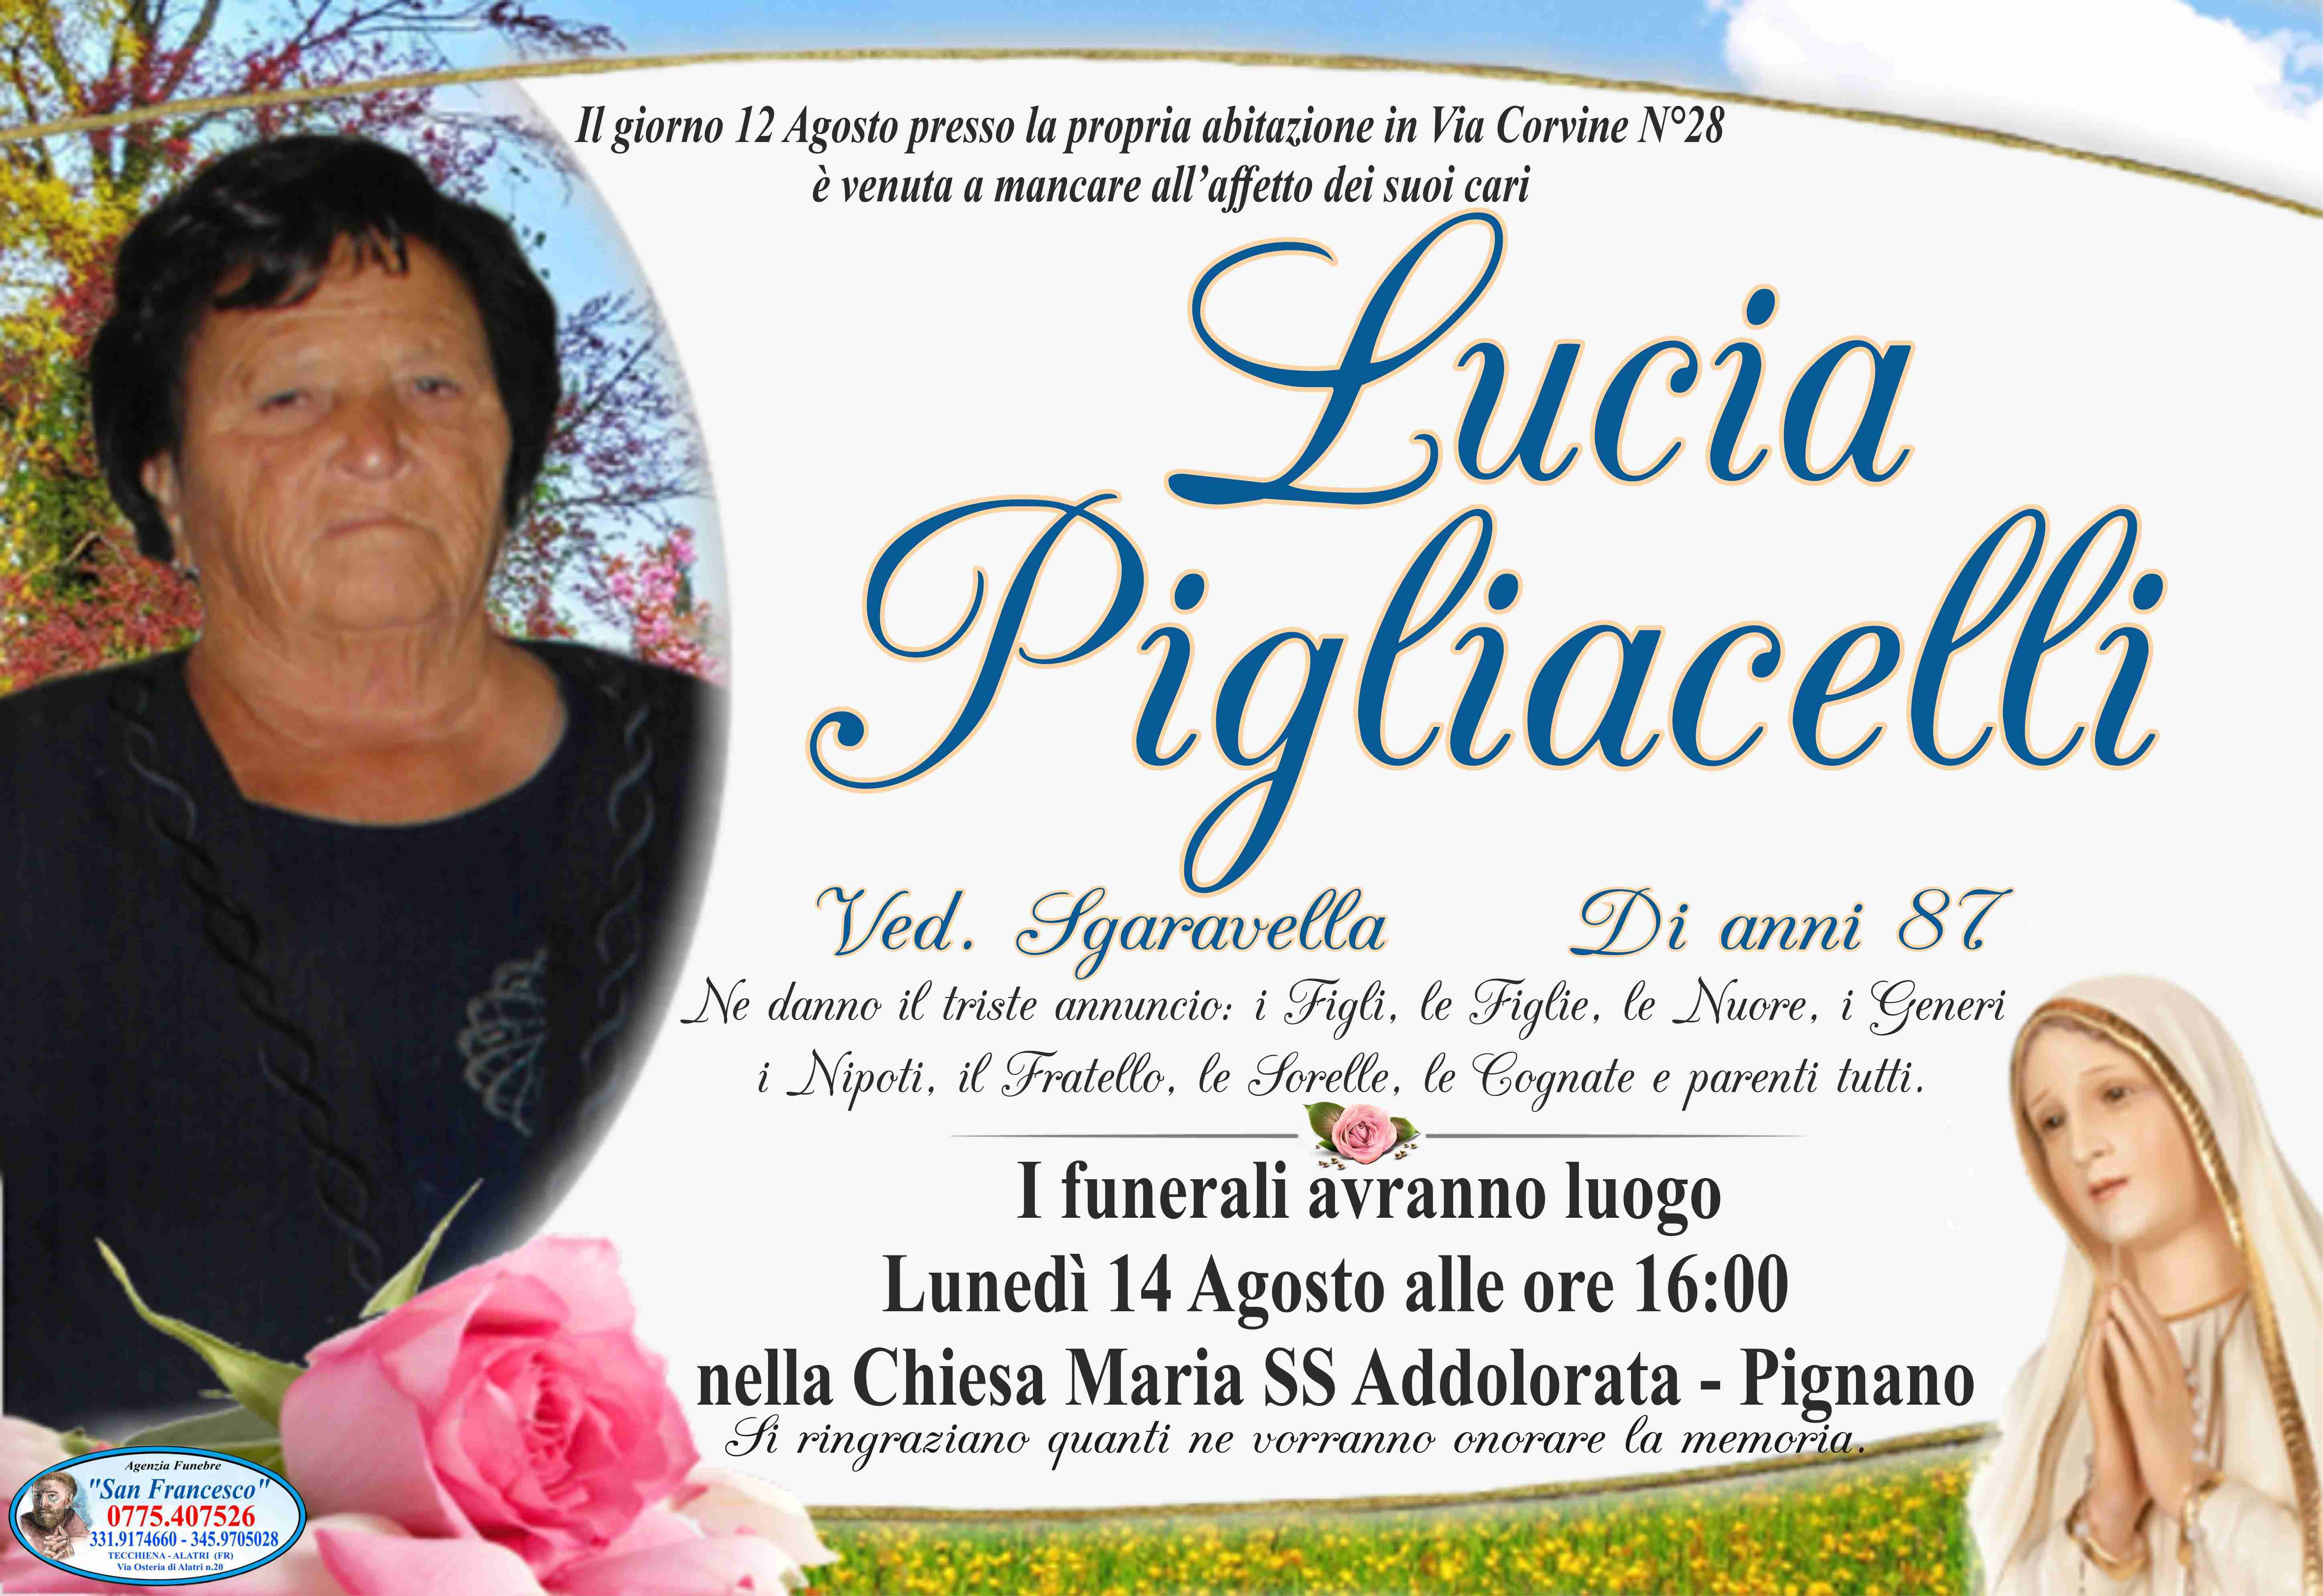 Lucia Pigliacelli